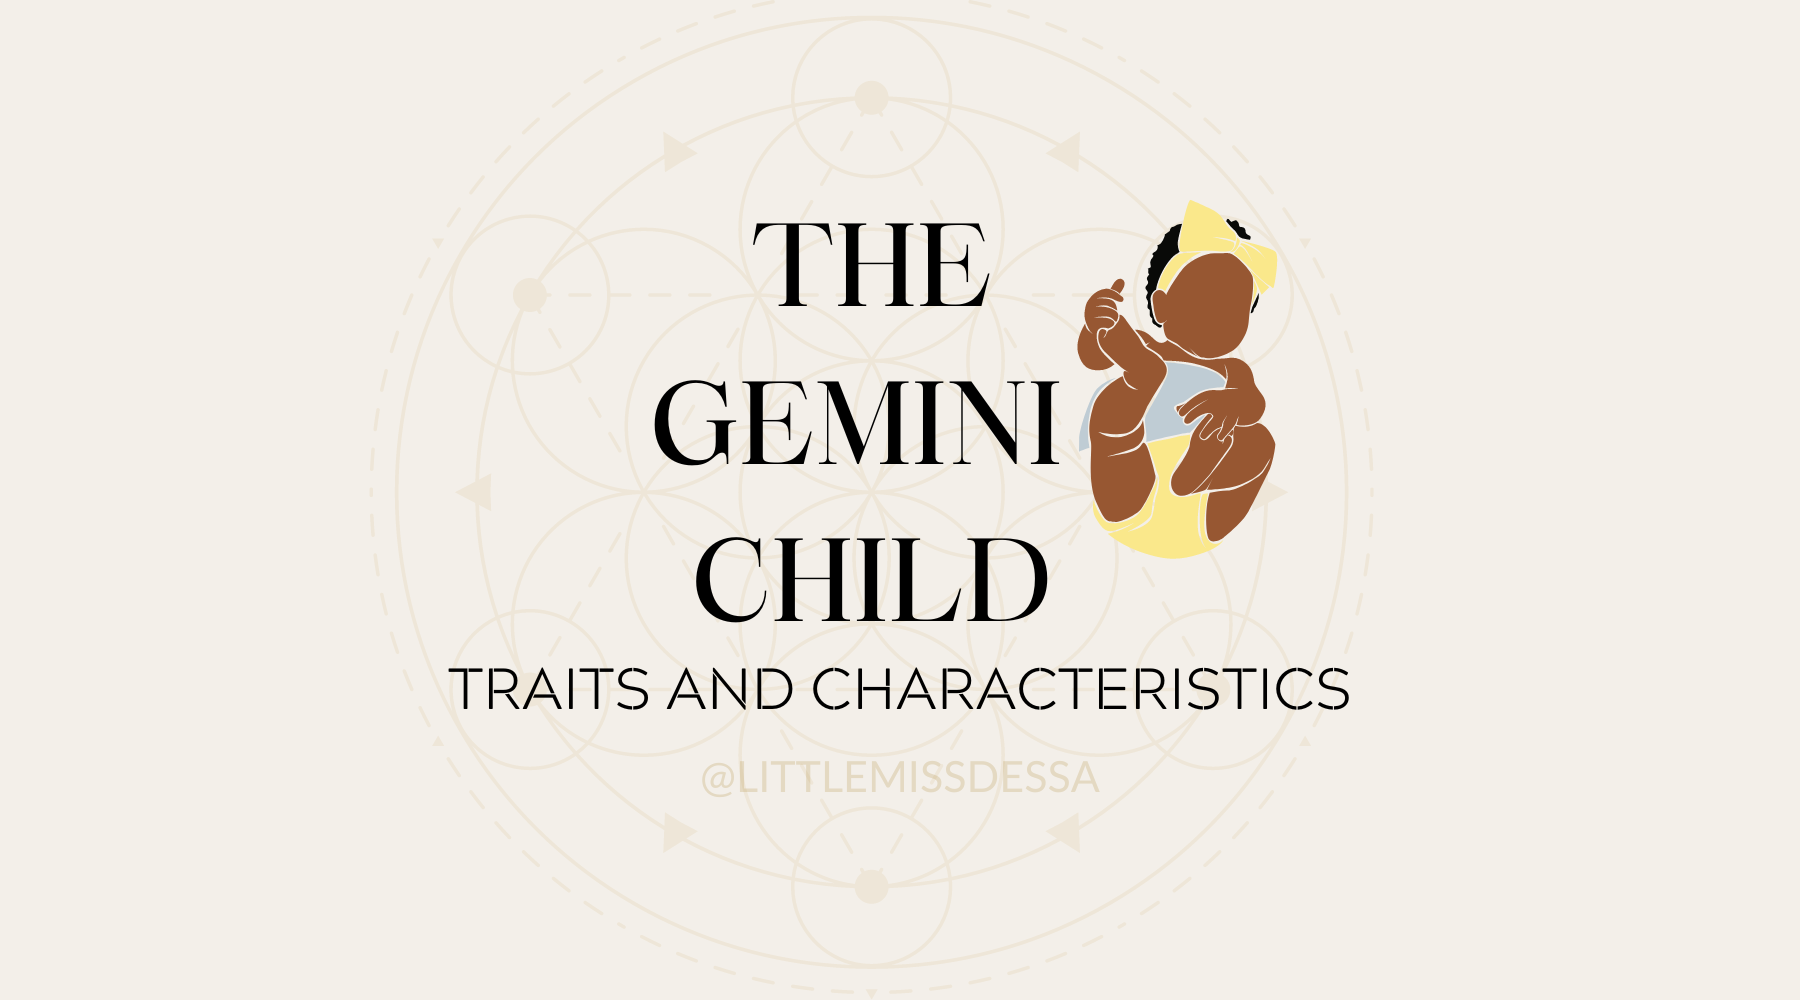 The Gemini Child